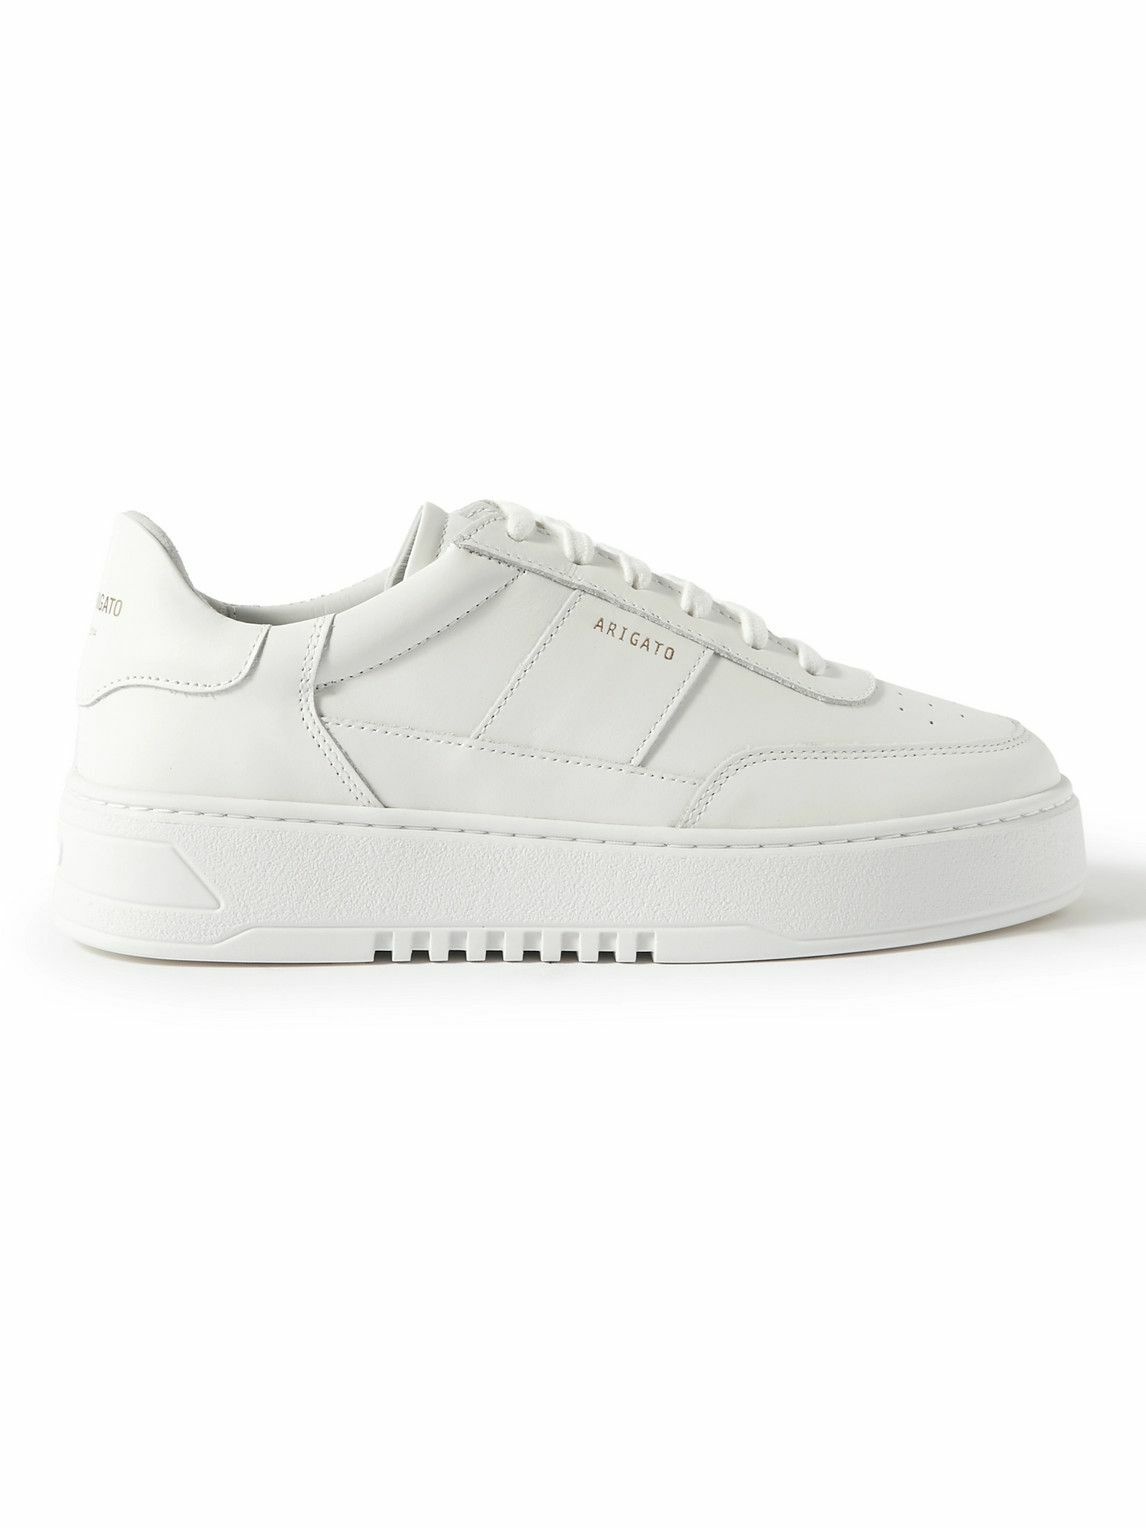 Axel Arigato - Orbit Vintage Leather Sneakers - White Axel Arigato